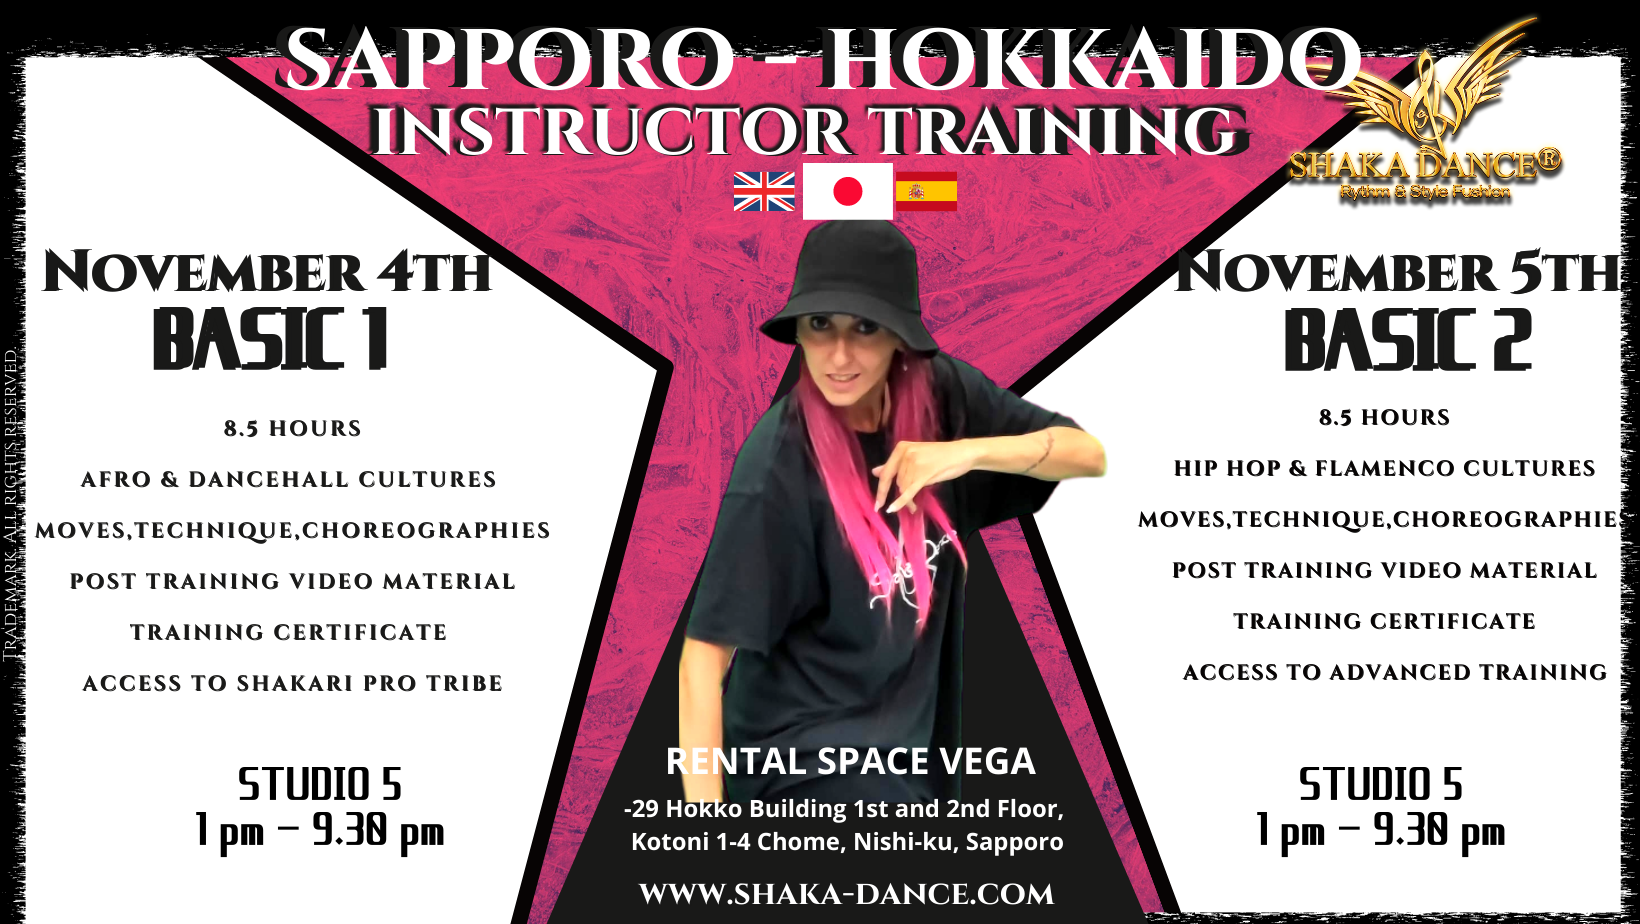 SHAKA DANCE® INSTRUCTOR TRAINING SAPPORO-HOKKAIDO ( B1 & B2)